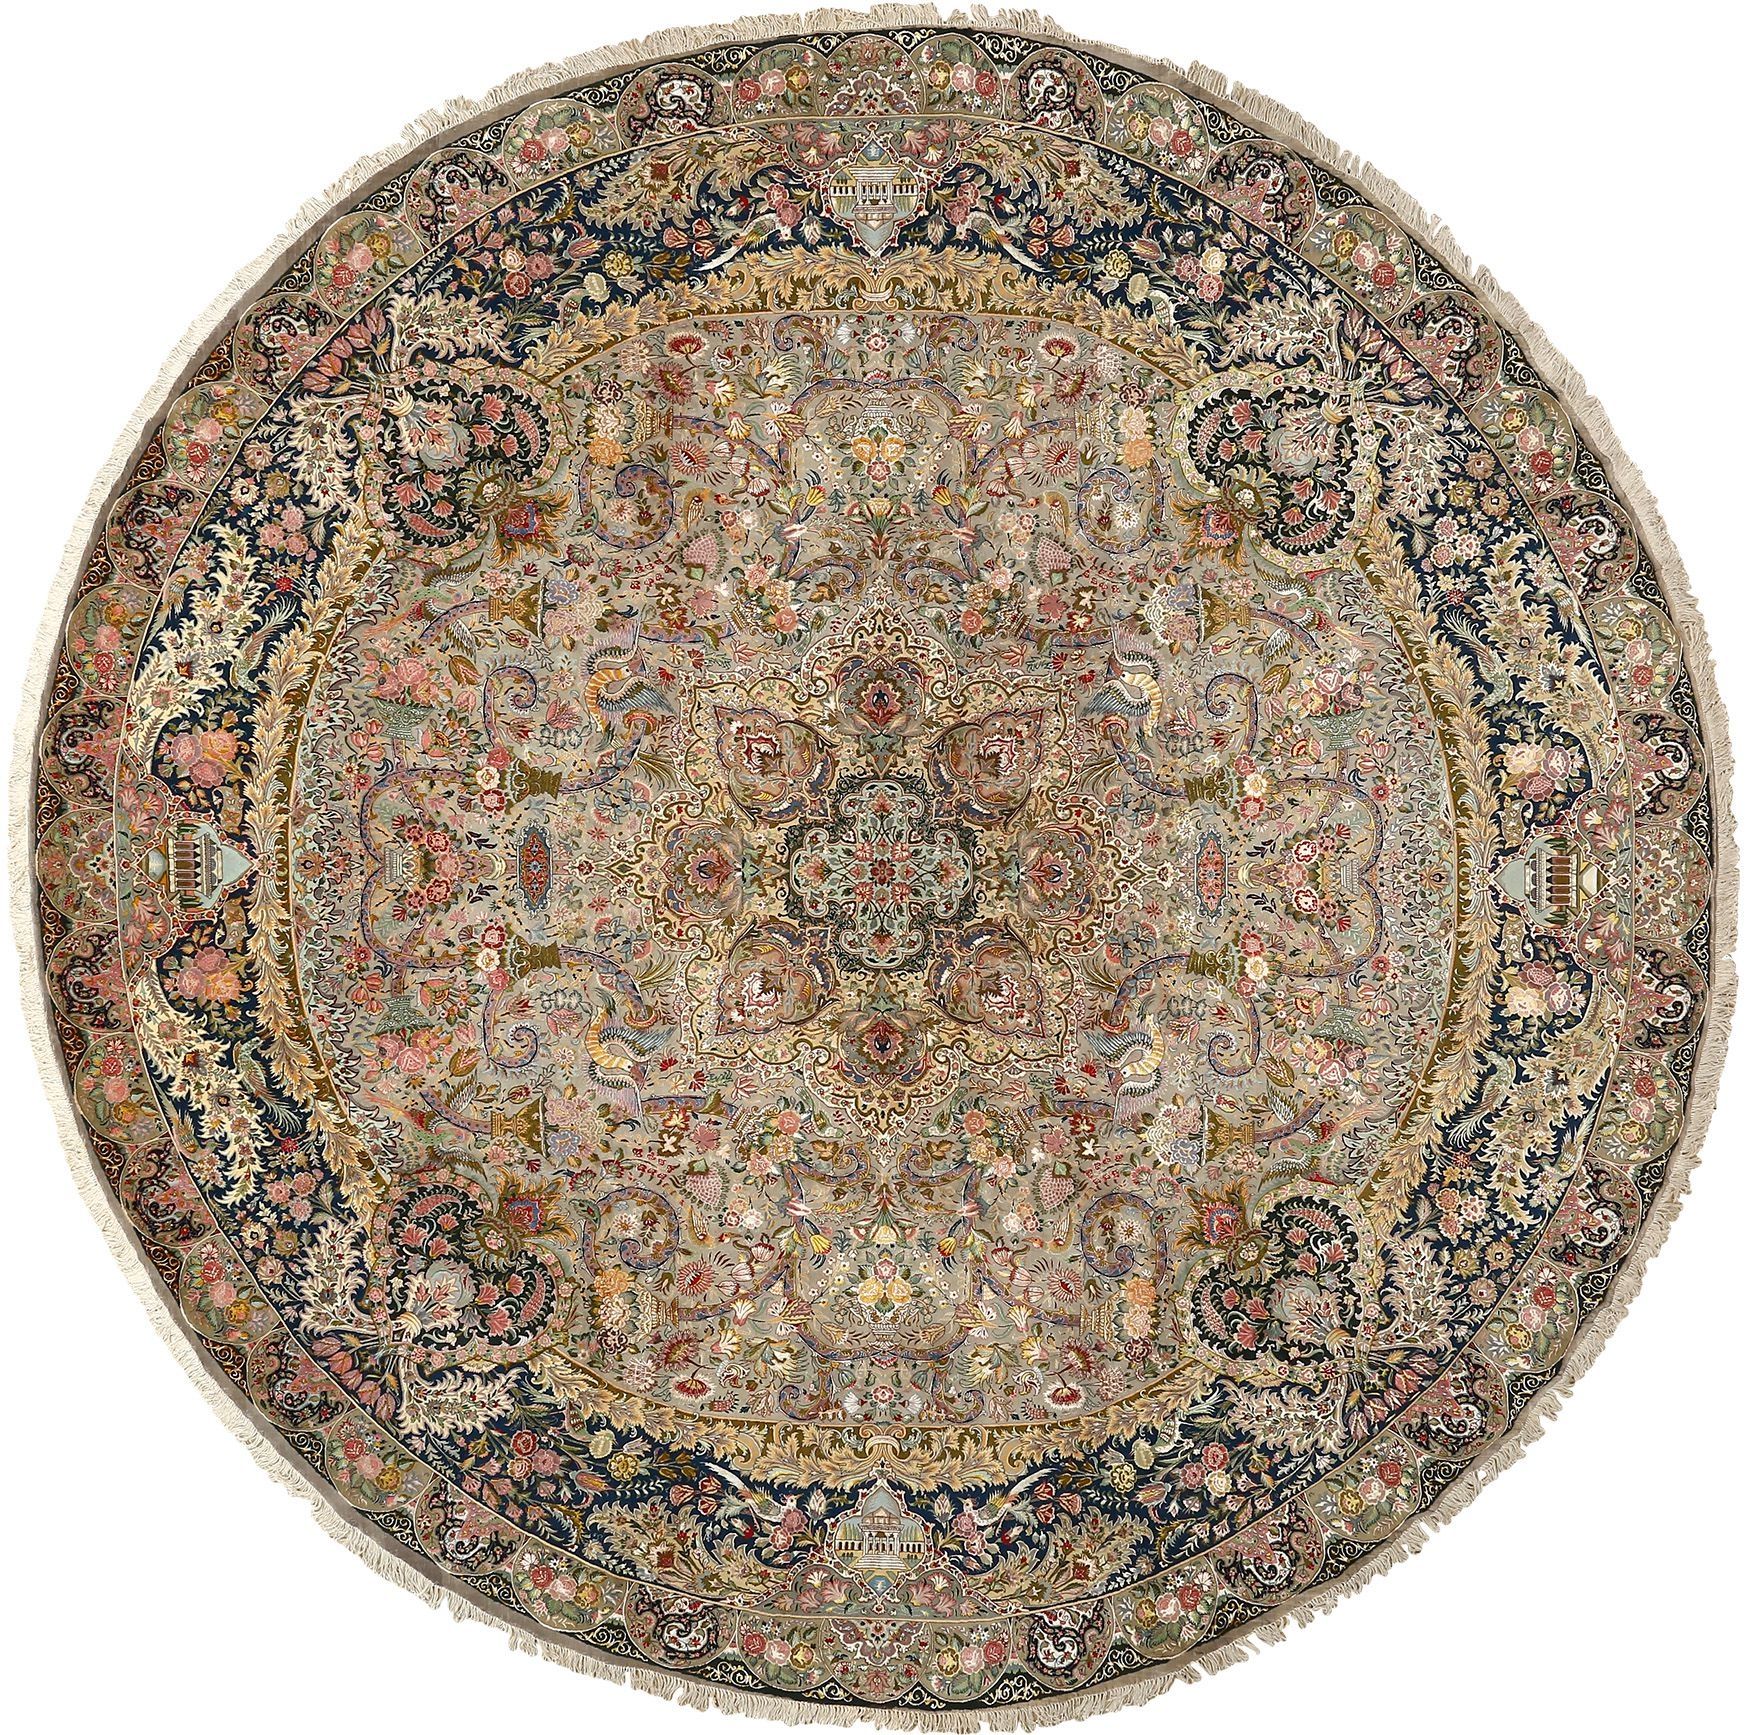 Beautiful Round Vintage Tabriz Persian Rug 51125 Regarding Round Persian Rugs (View 1 of 15)